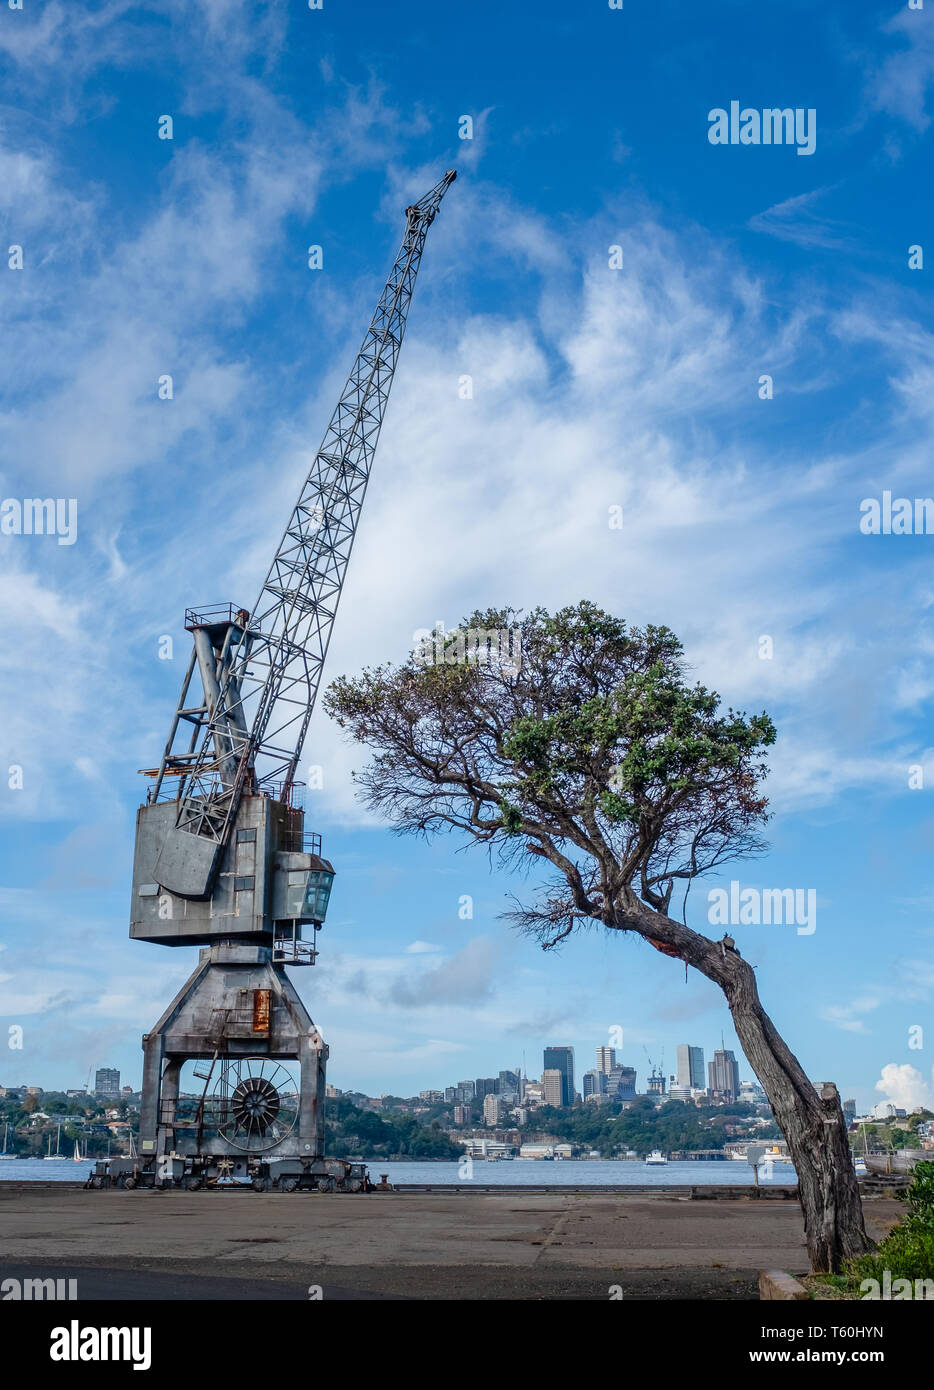 Cockatoo island Sydney, Australia, grandi gru industriali con il vecchio albero sul dock di marittima storico cantiere navale Foto Stock